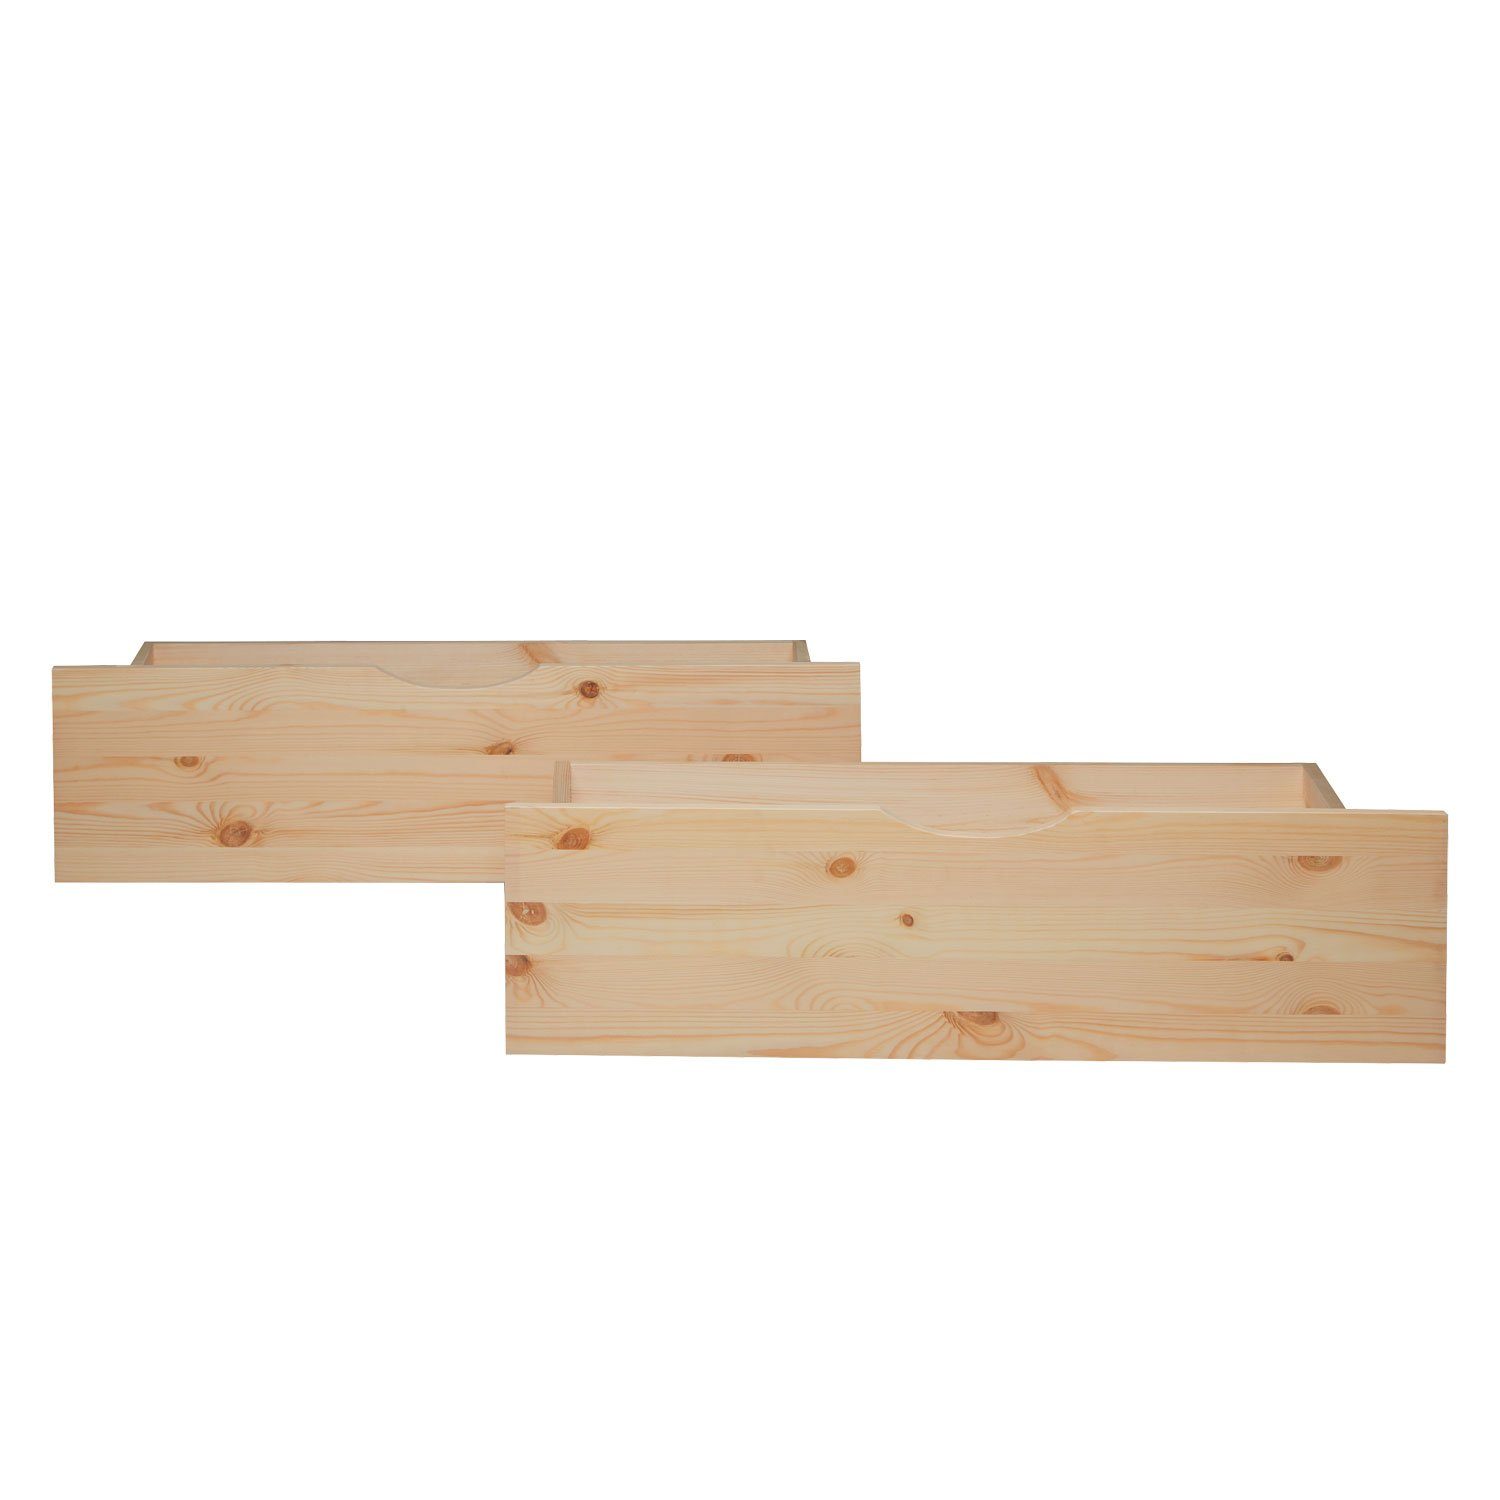 Set Bettschubkasten Aufbewahrung Homestyle4u Bettkasten 2er Schublade Holz